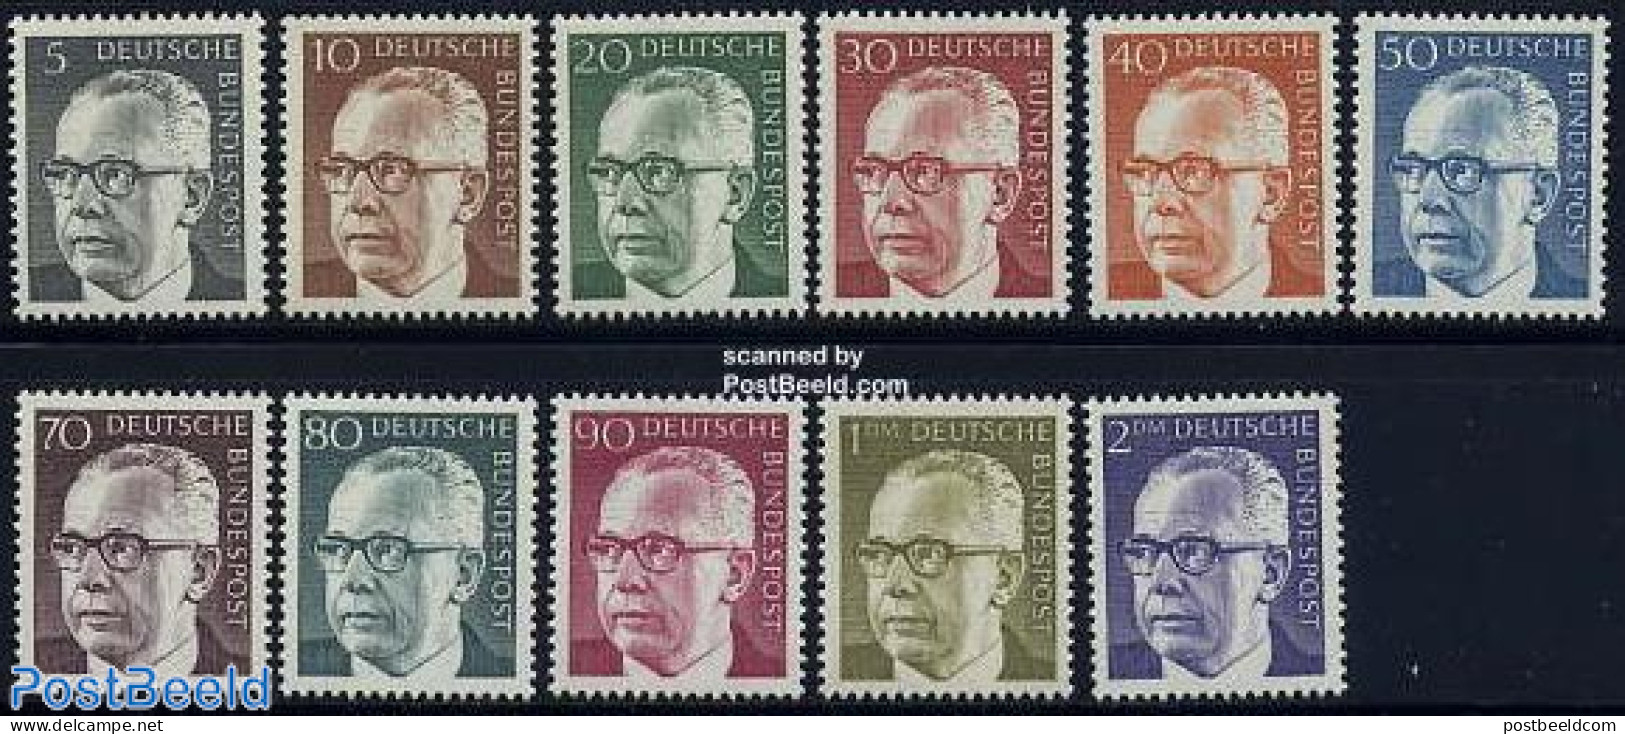 Germany, Federal Republic 1970 Definitives, Heinemann 11v, Mint NH - Neufs